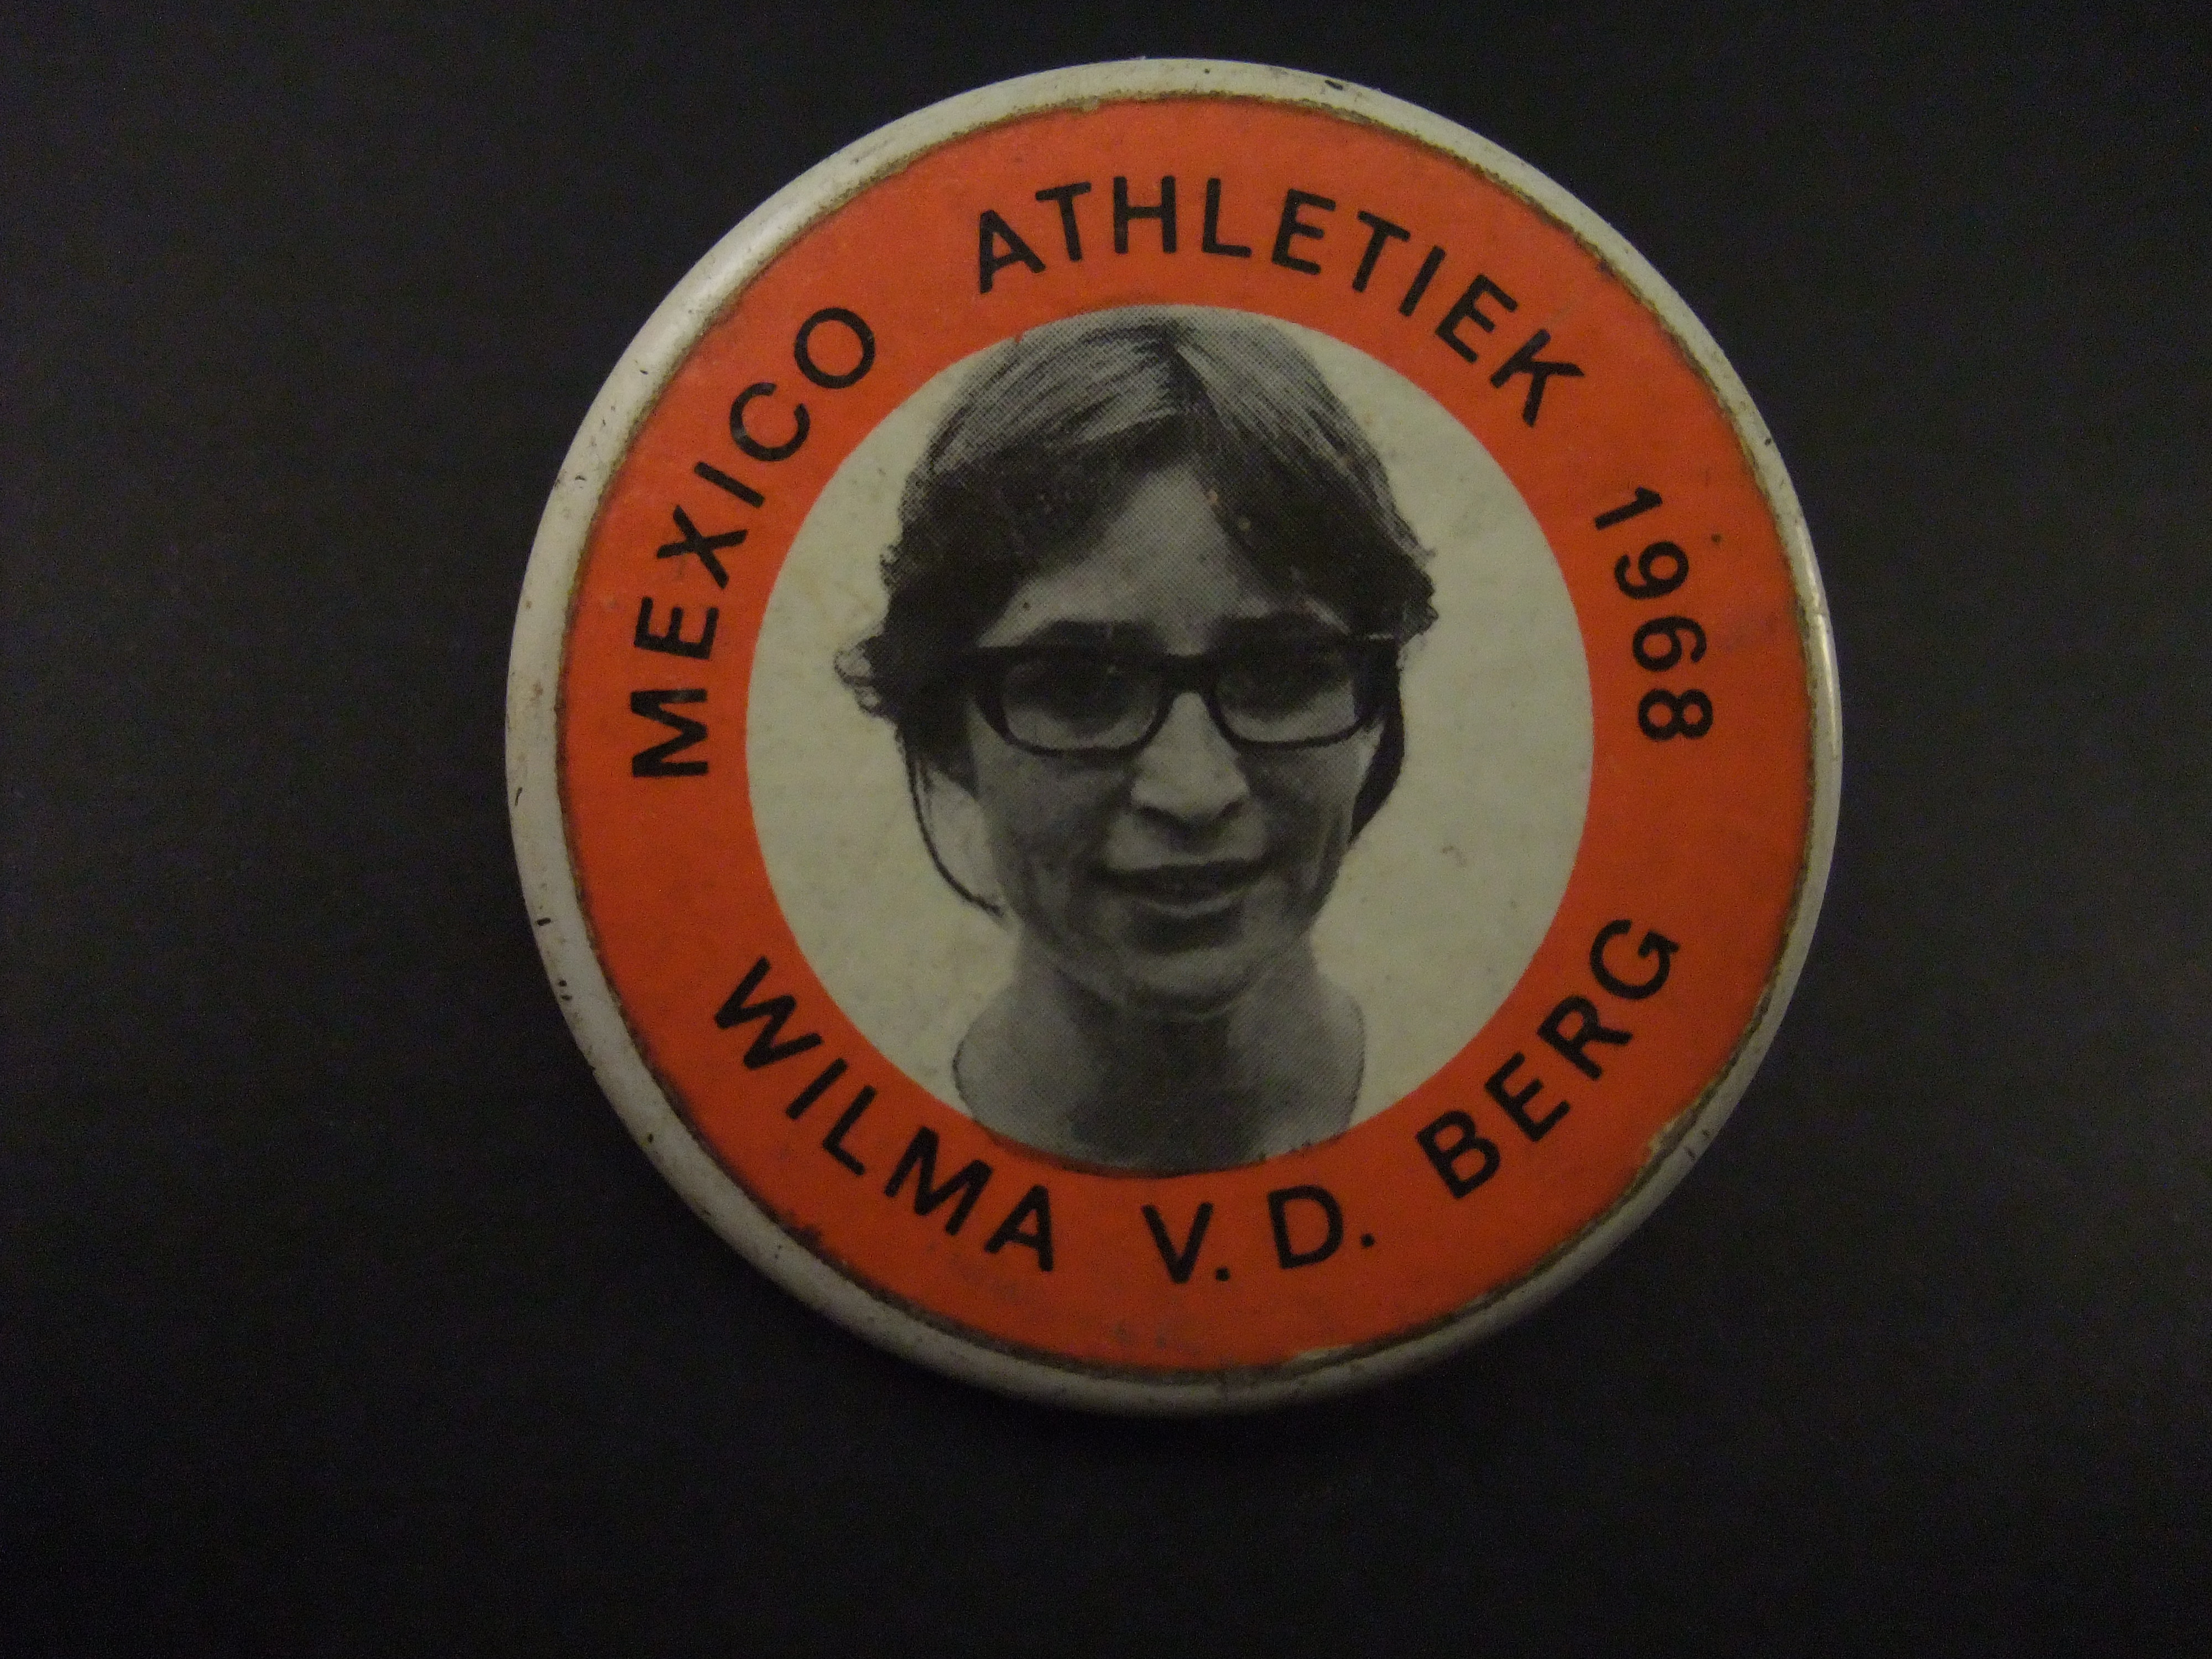 Wilma van den Berg voormalige Nederlandse sprintster.( atletiek) Olympische Spelen Mexico 1968